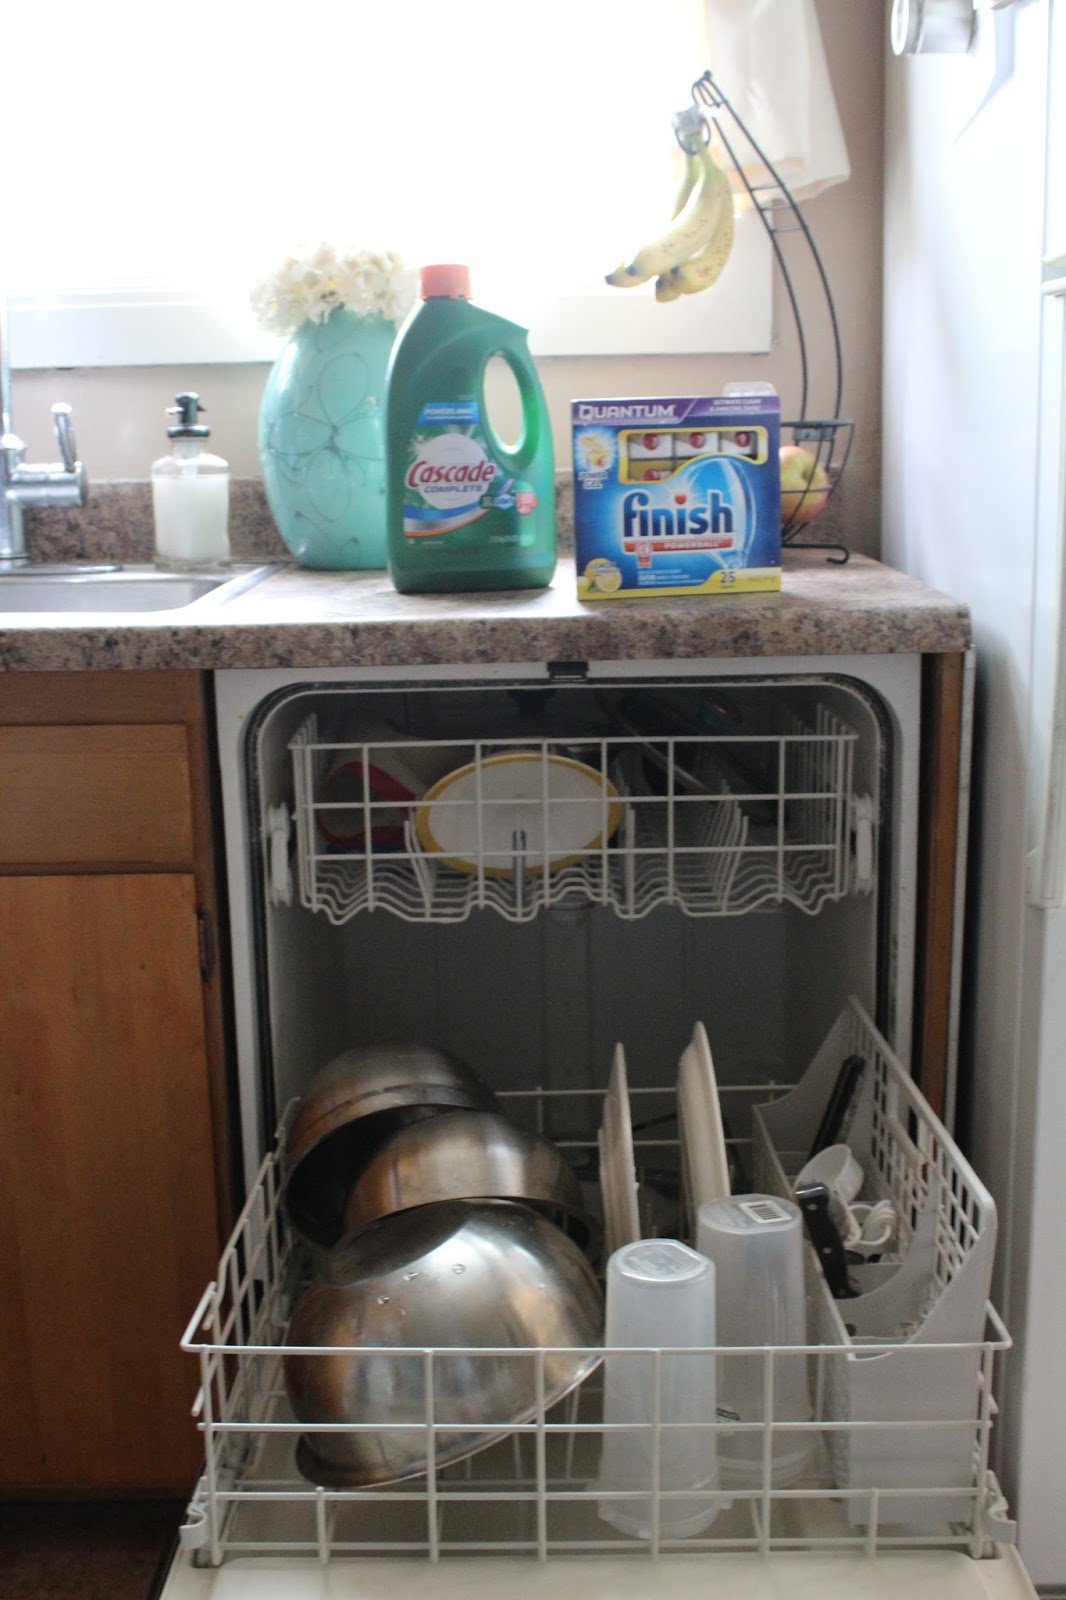 Breezy Days: The Dishwasher Detergent War